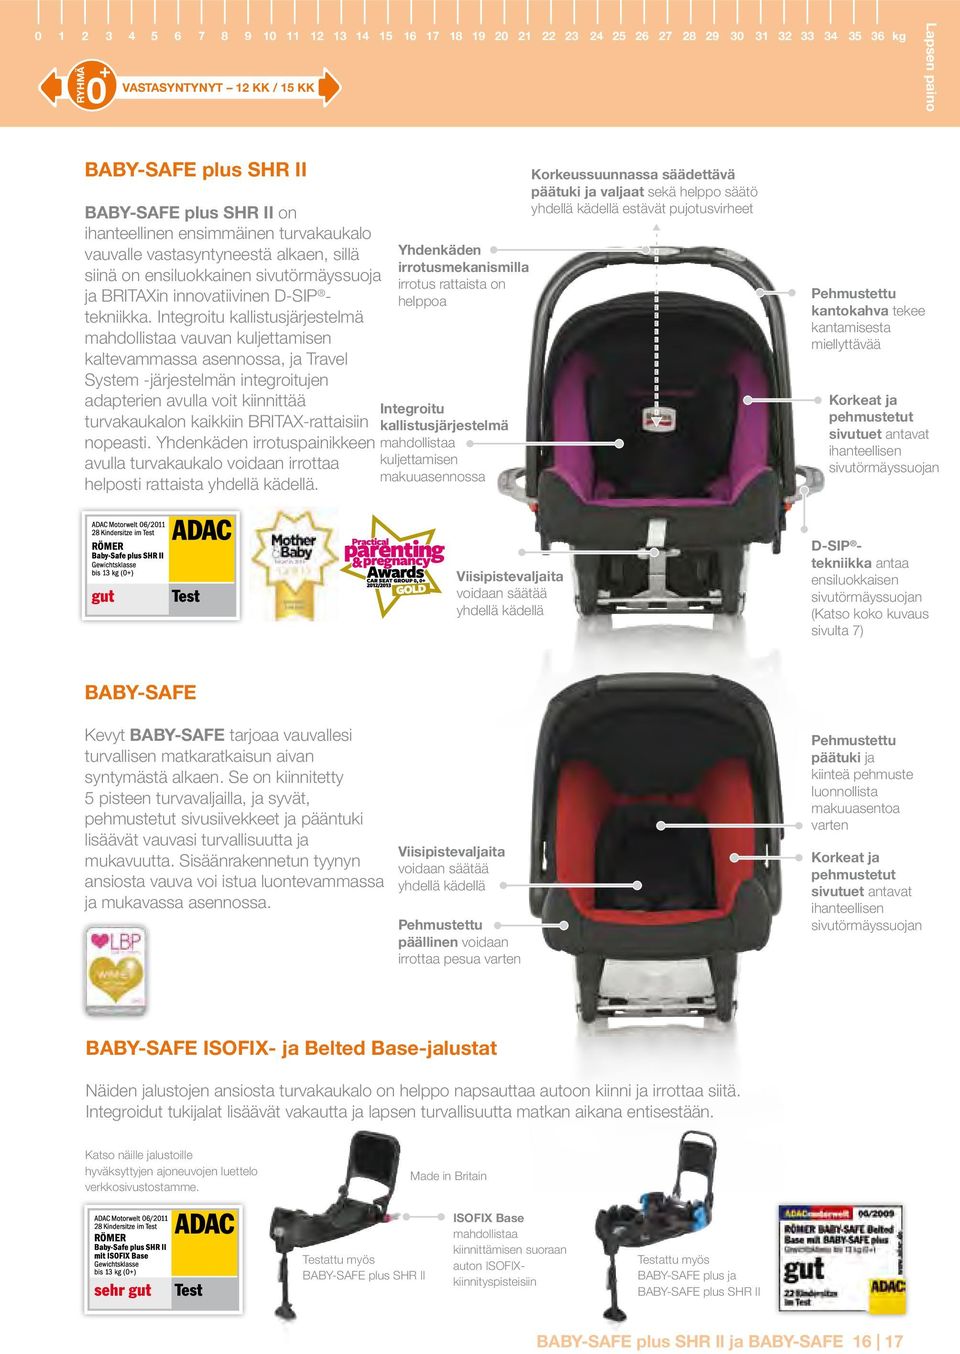 Integroitu kallistusjärjestelmä mahdollistaa vauvan kuljettamisen kaltevammassa asennossa, ja Travel System -järjestelmän integroitujen adapterien avulla voit kiinnittää turvakaukalon kaikkiin